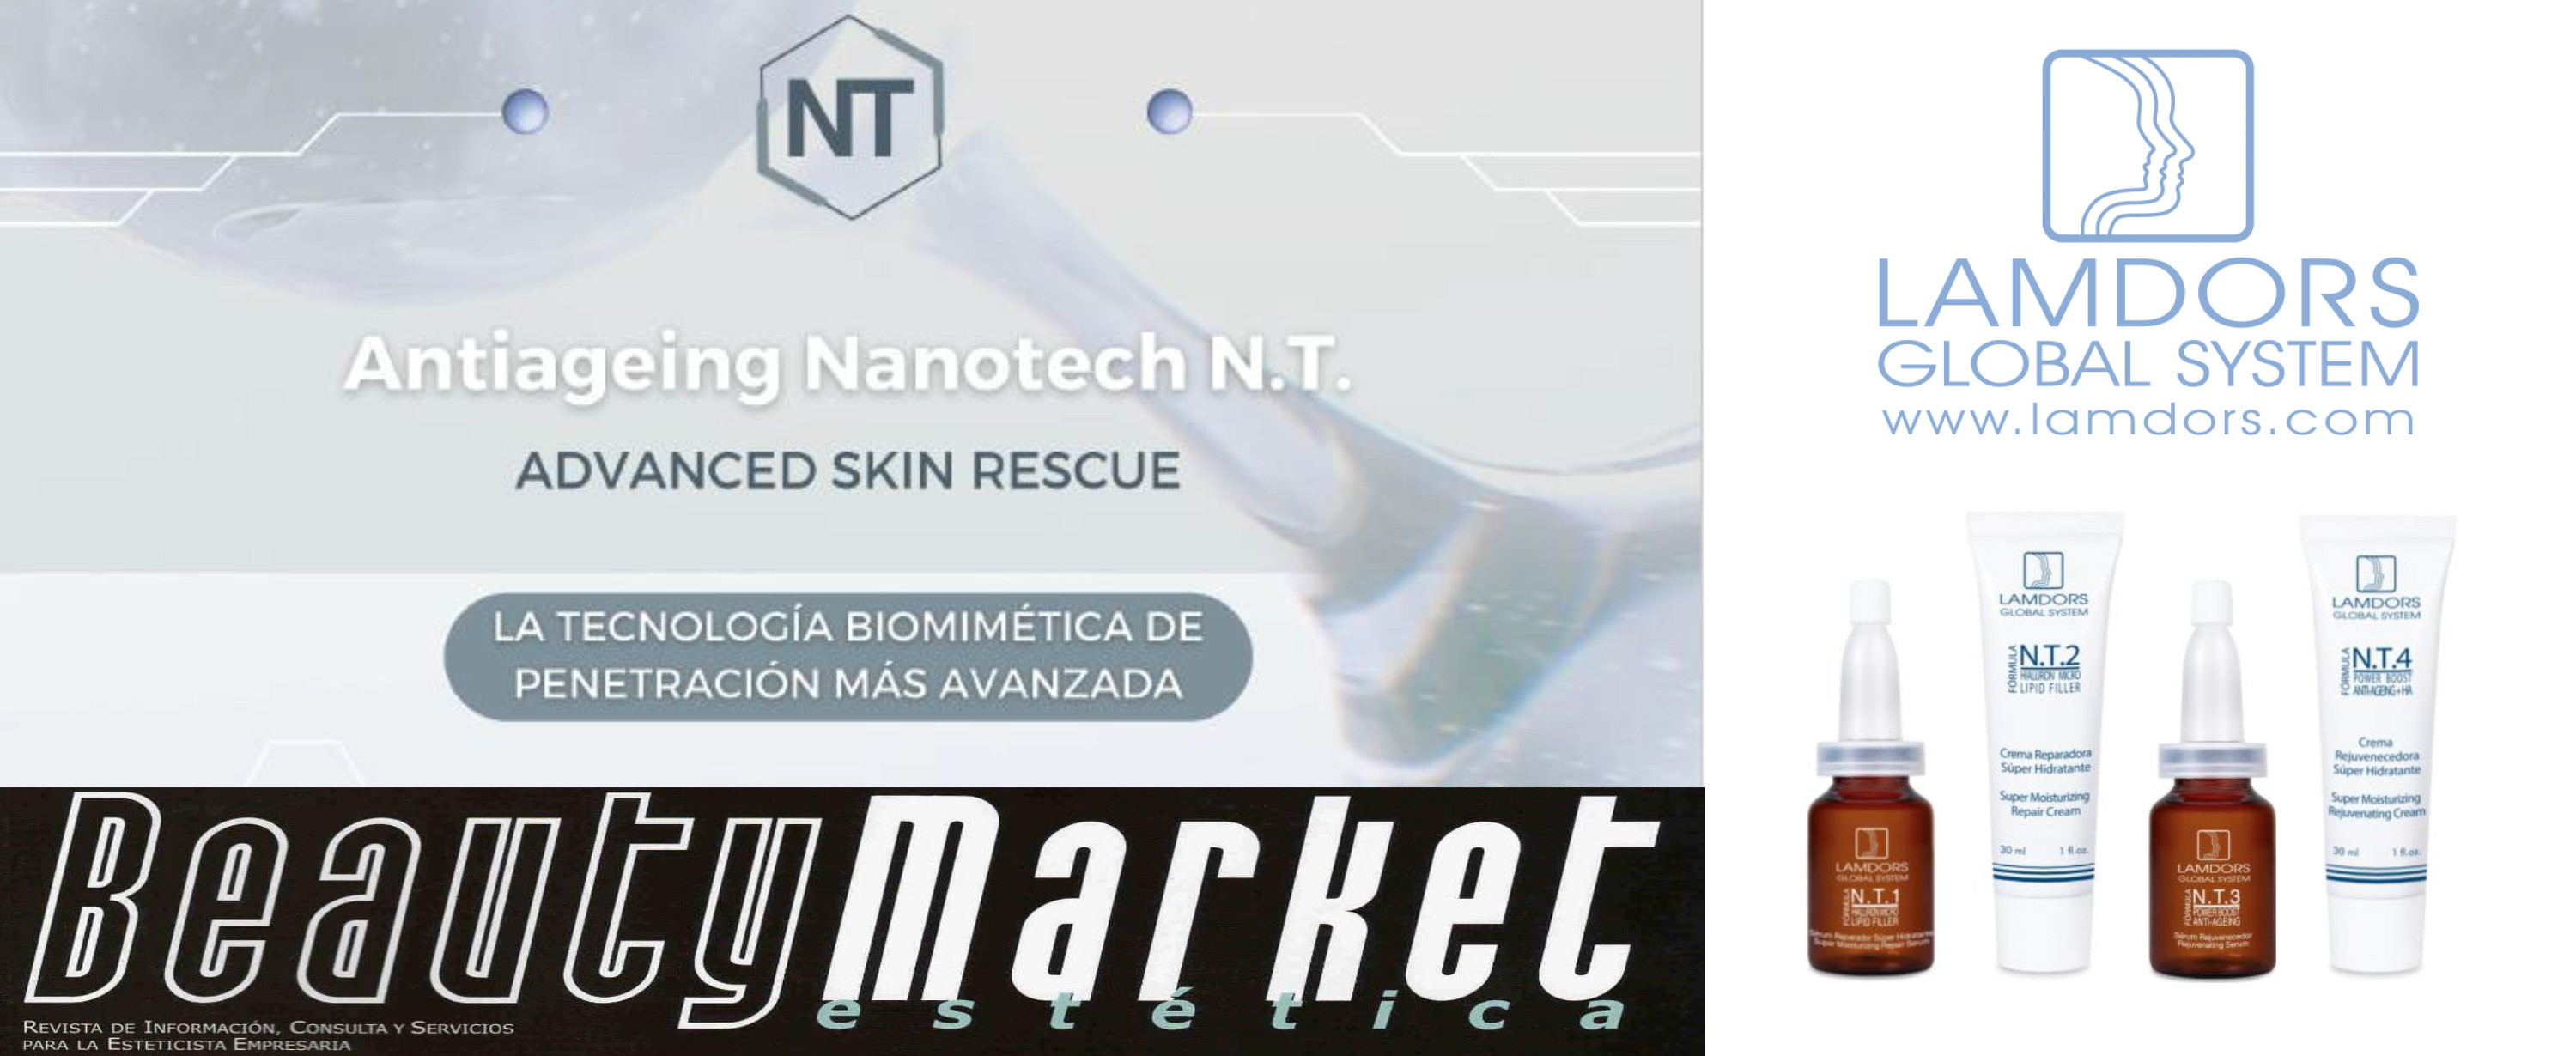 Nanotecnología Antiageing N.T. Advanced Skin Rescue de Lamdors, la revolución de la belleza